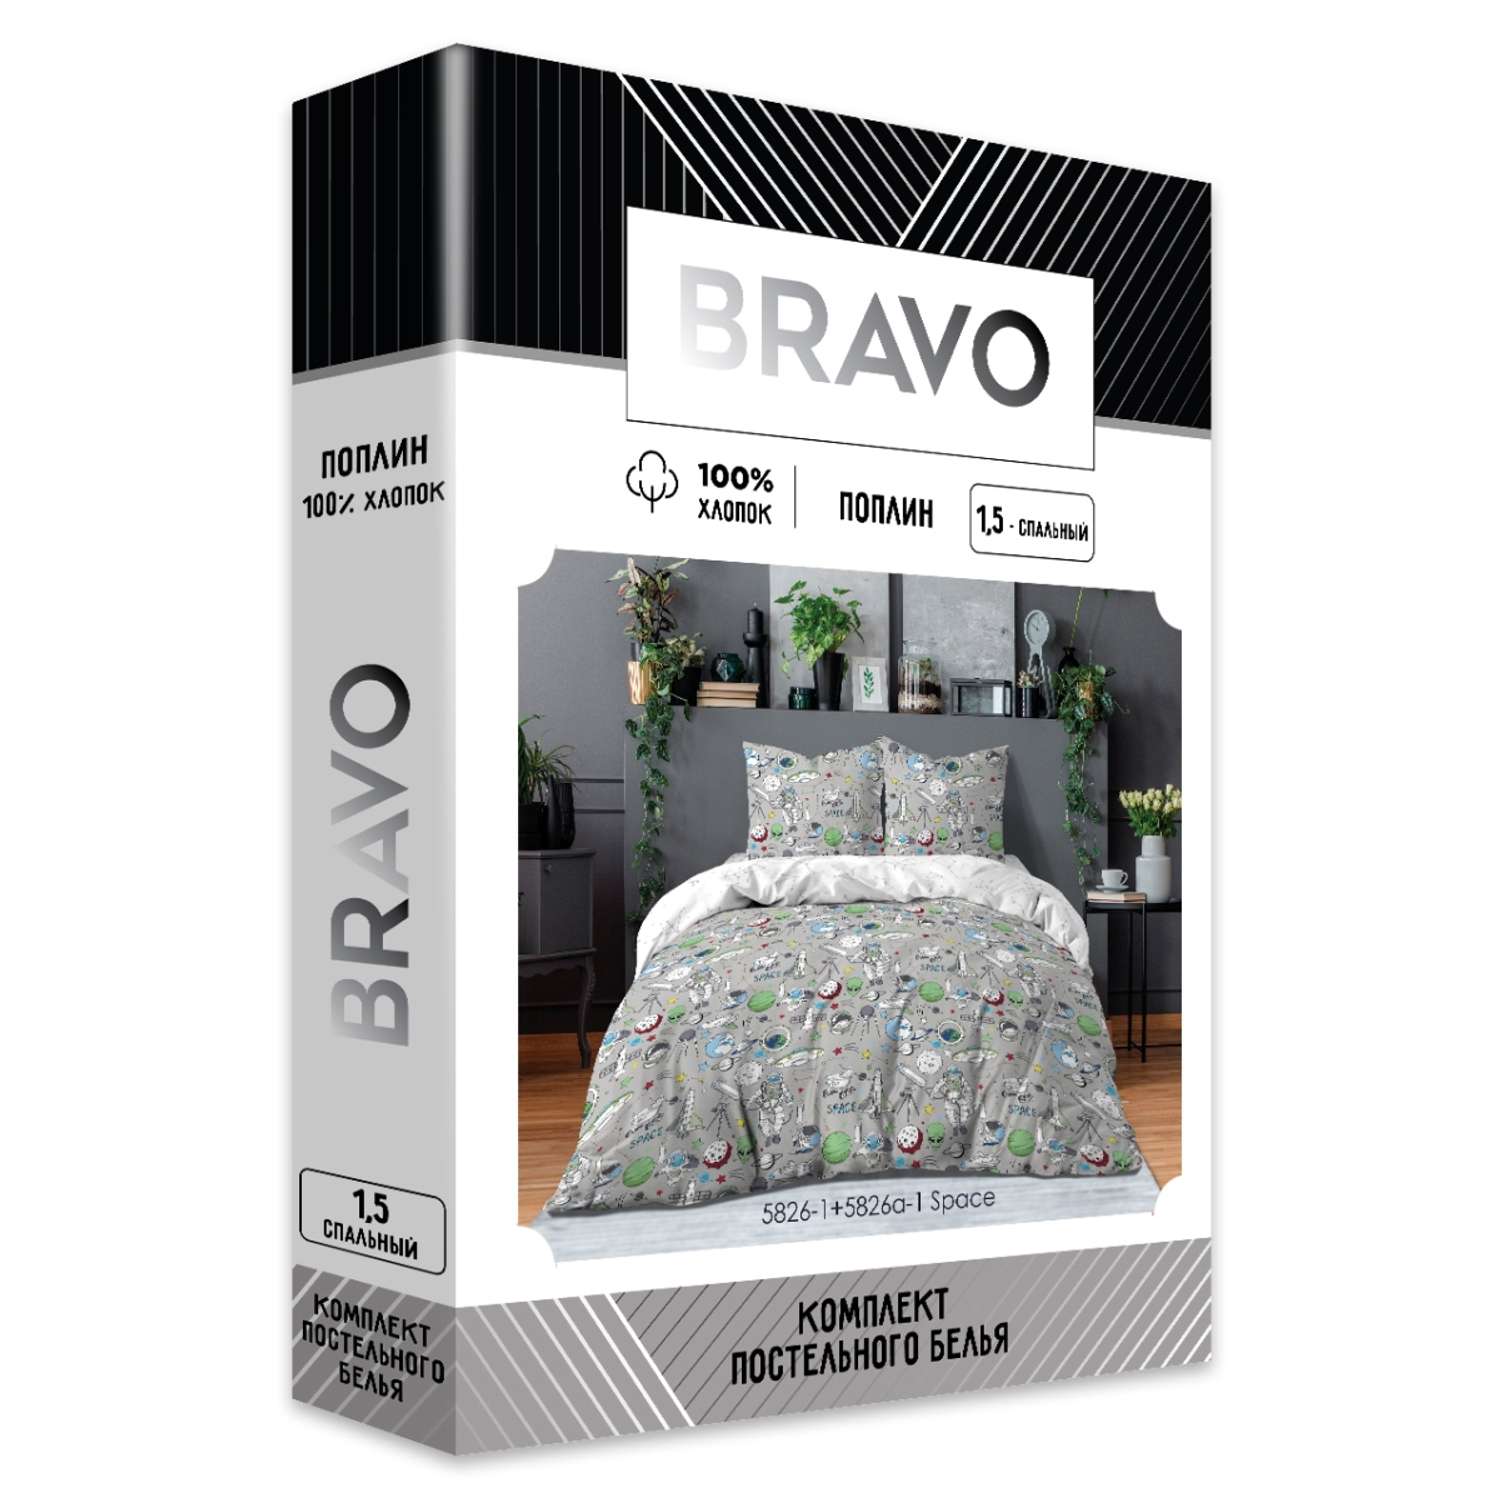 Комплект постельного белья Bravo Space 1.5 спальный наволочки 70х70 м.101 рис.5826-1+5826а-1 - фото 9